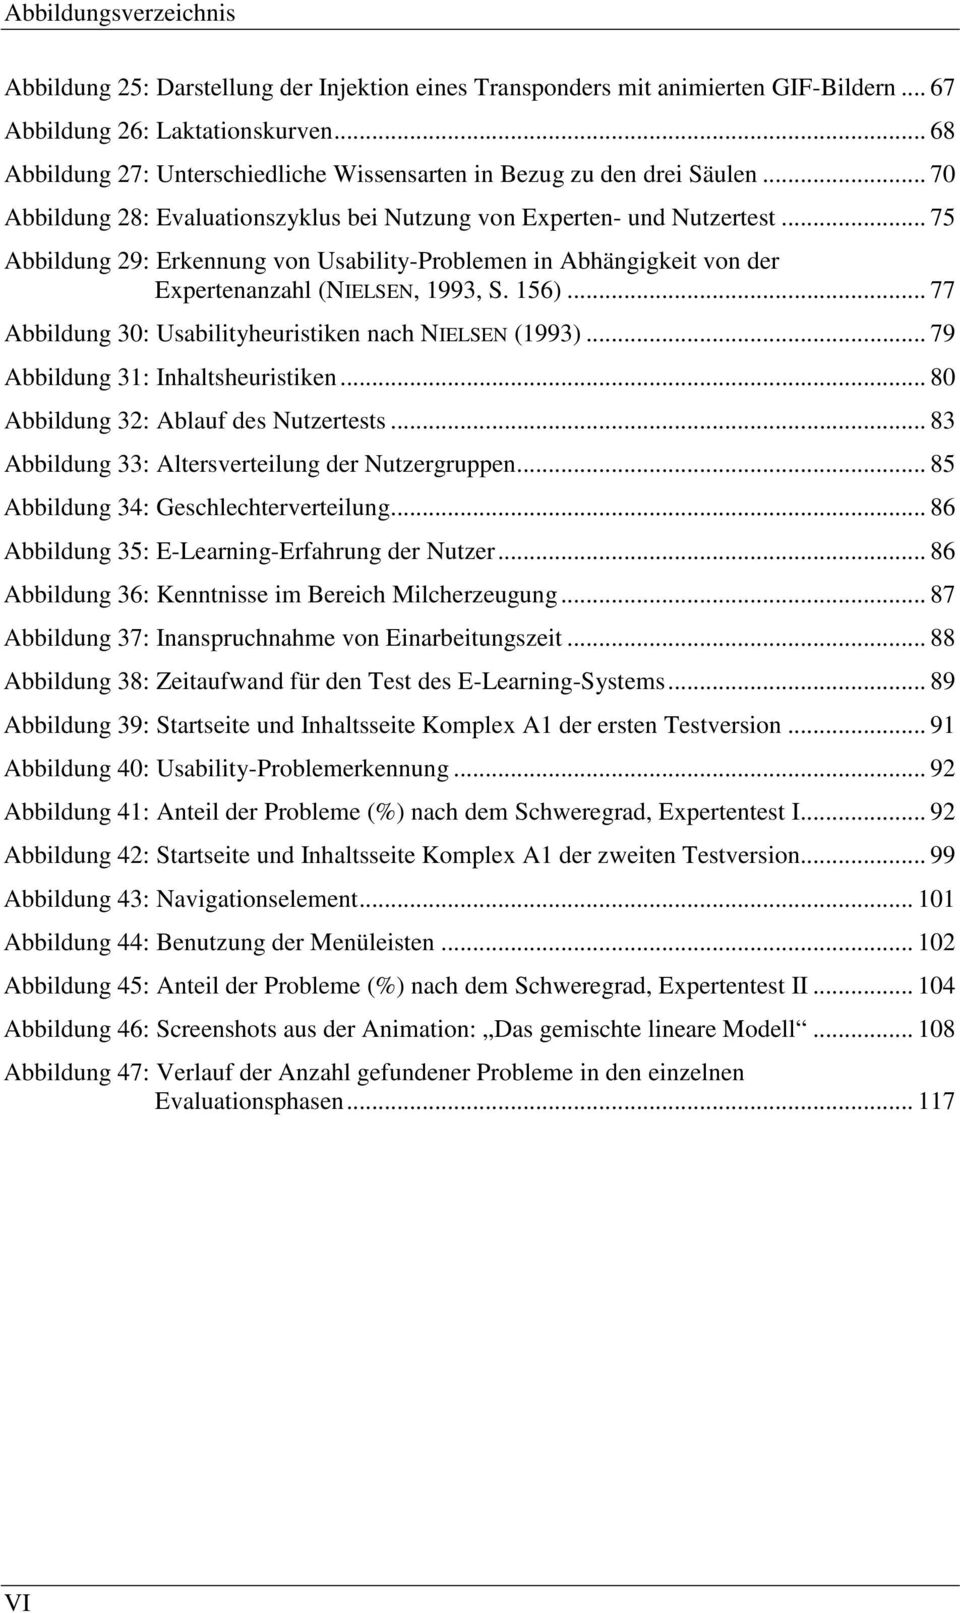 .. 75 Abbildung 29: Erkennung von Usability-Problemen in Abhängigkeit von der Expertenanzahl (NIELSEN, 1993, S. 156)... 77 Abbildung 30: Usabilityheuristiken nach NIELSEN (1993).